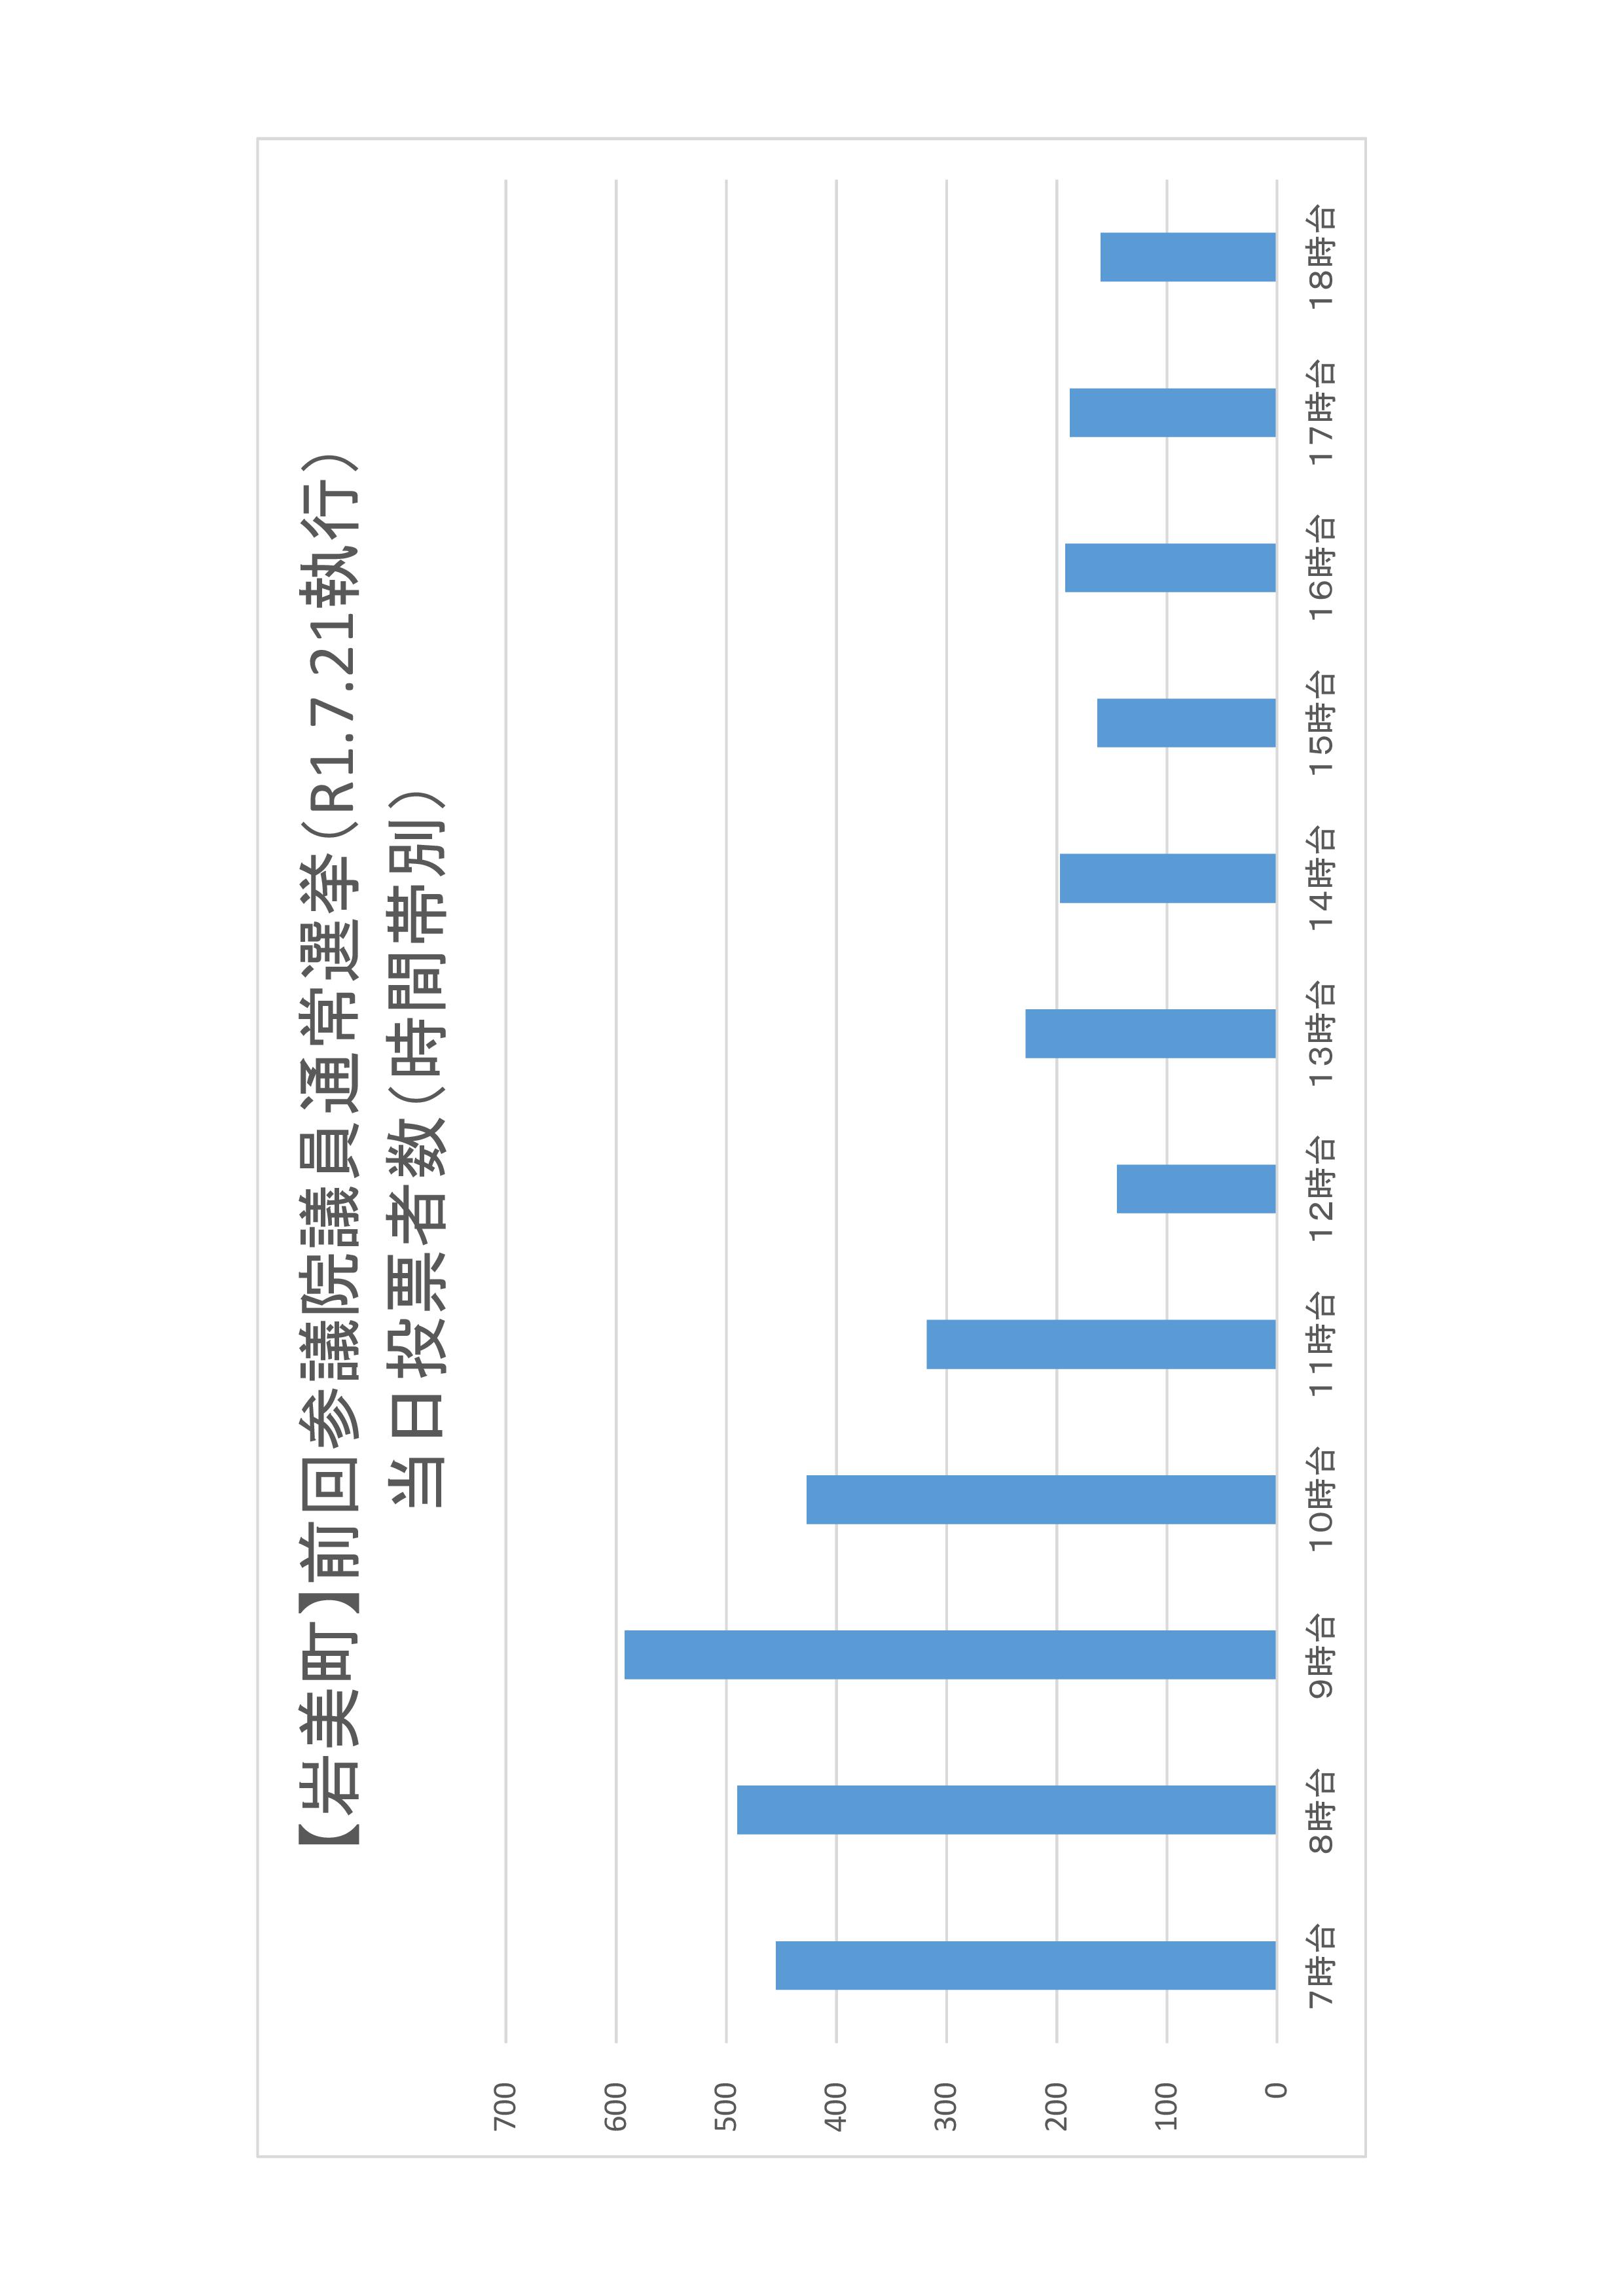 岩美町の時間帯別当日投票者数のグラフ